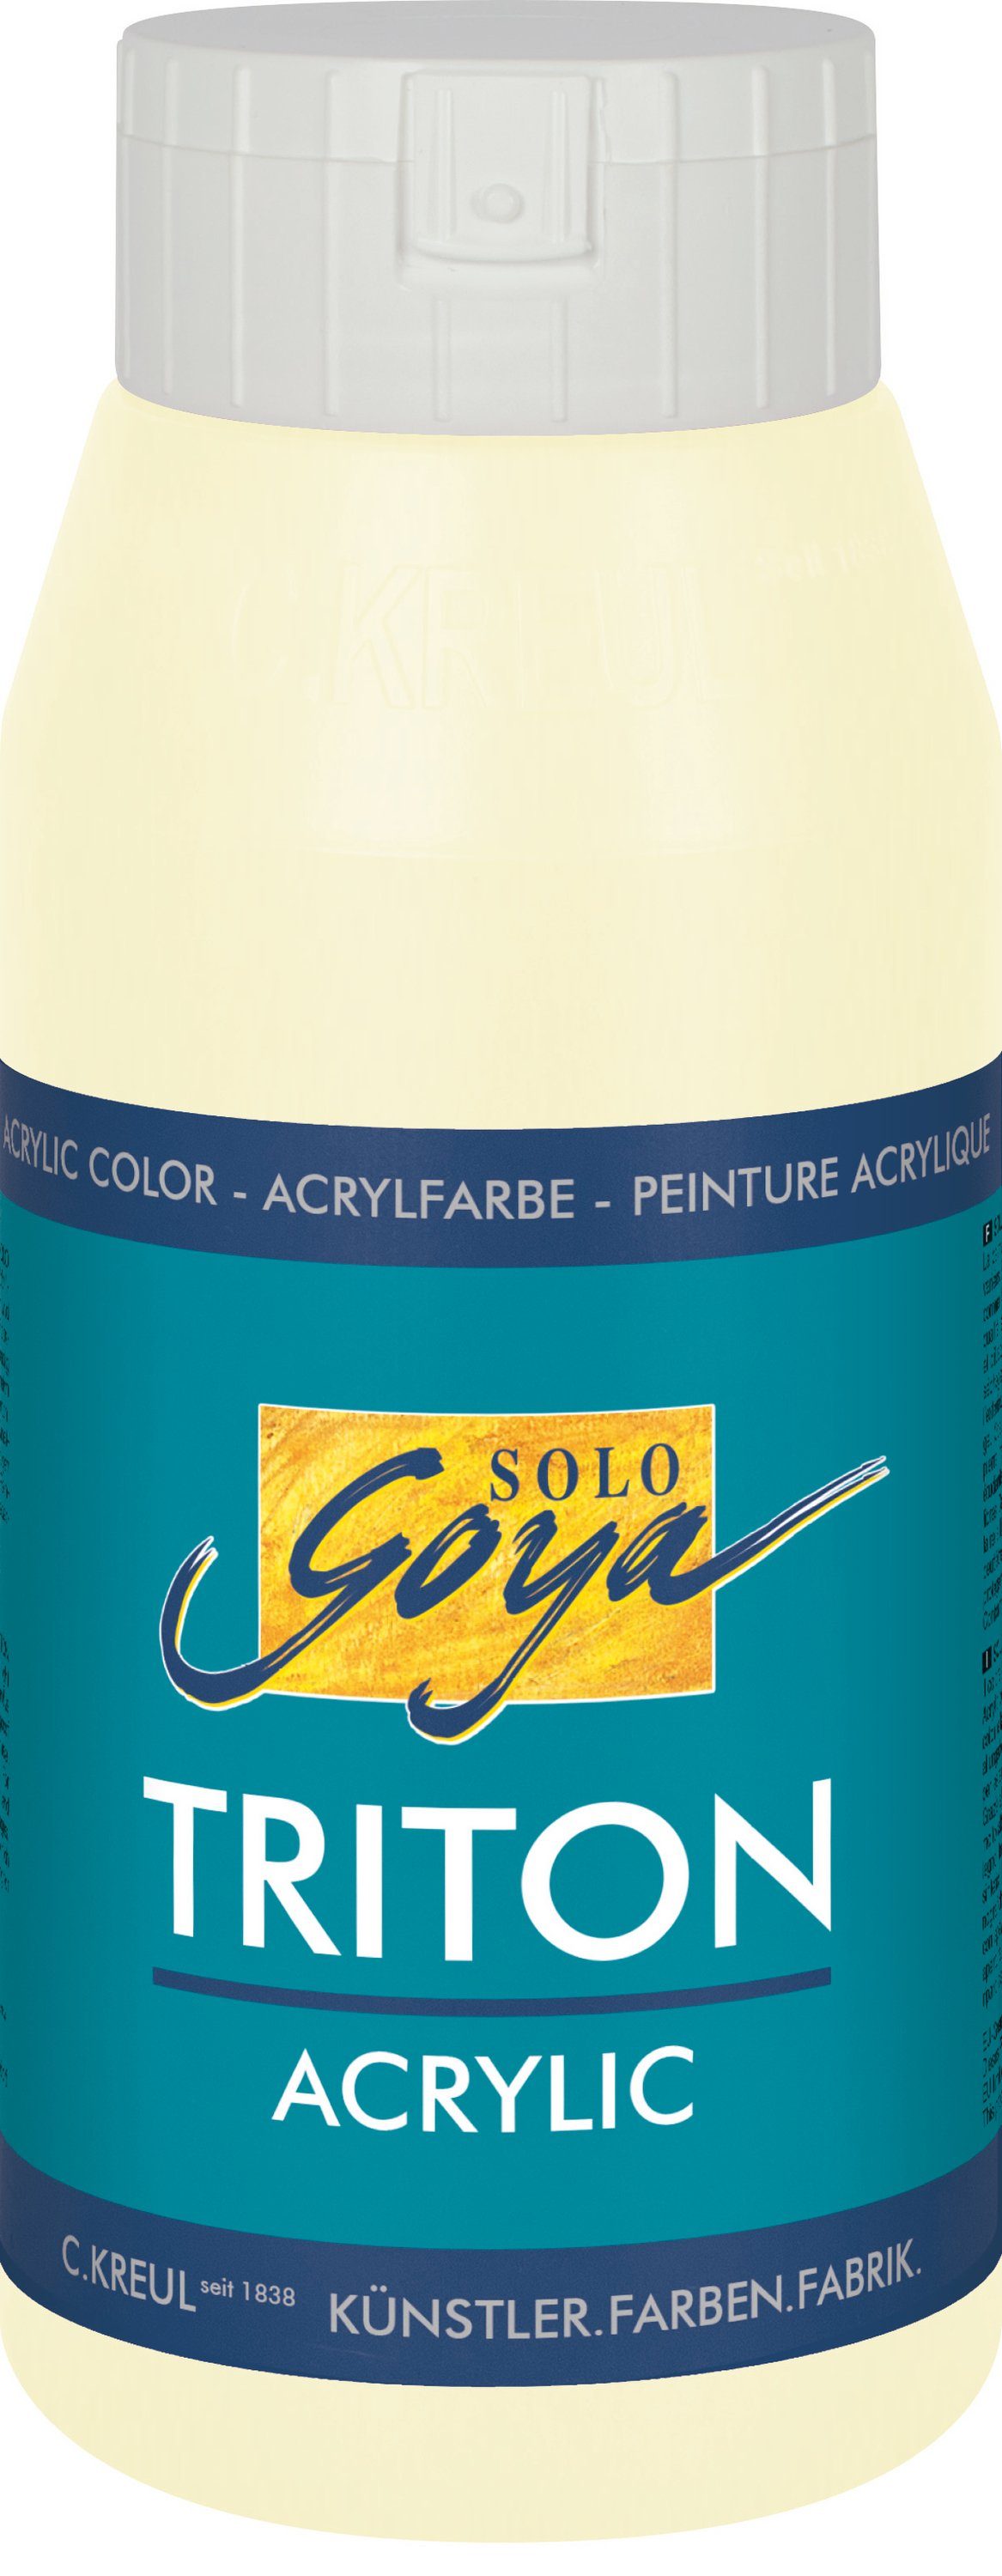 Goya Acrylfarbe Kreul Triton ml 750 Acrylic, Elfenbein Solo